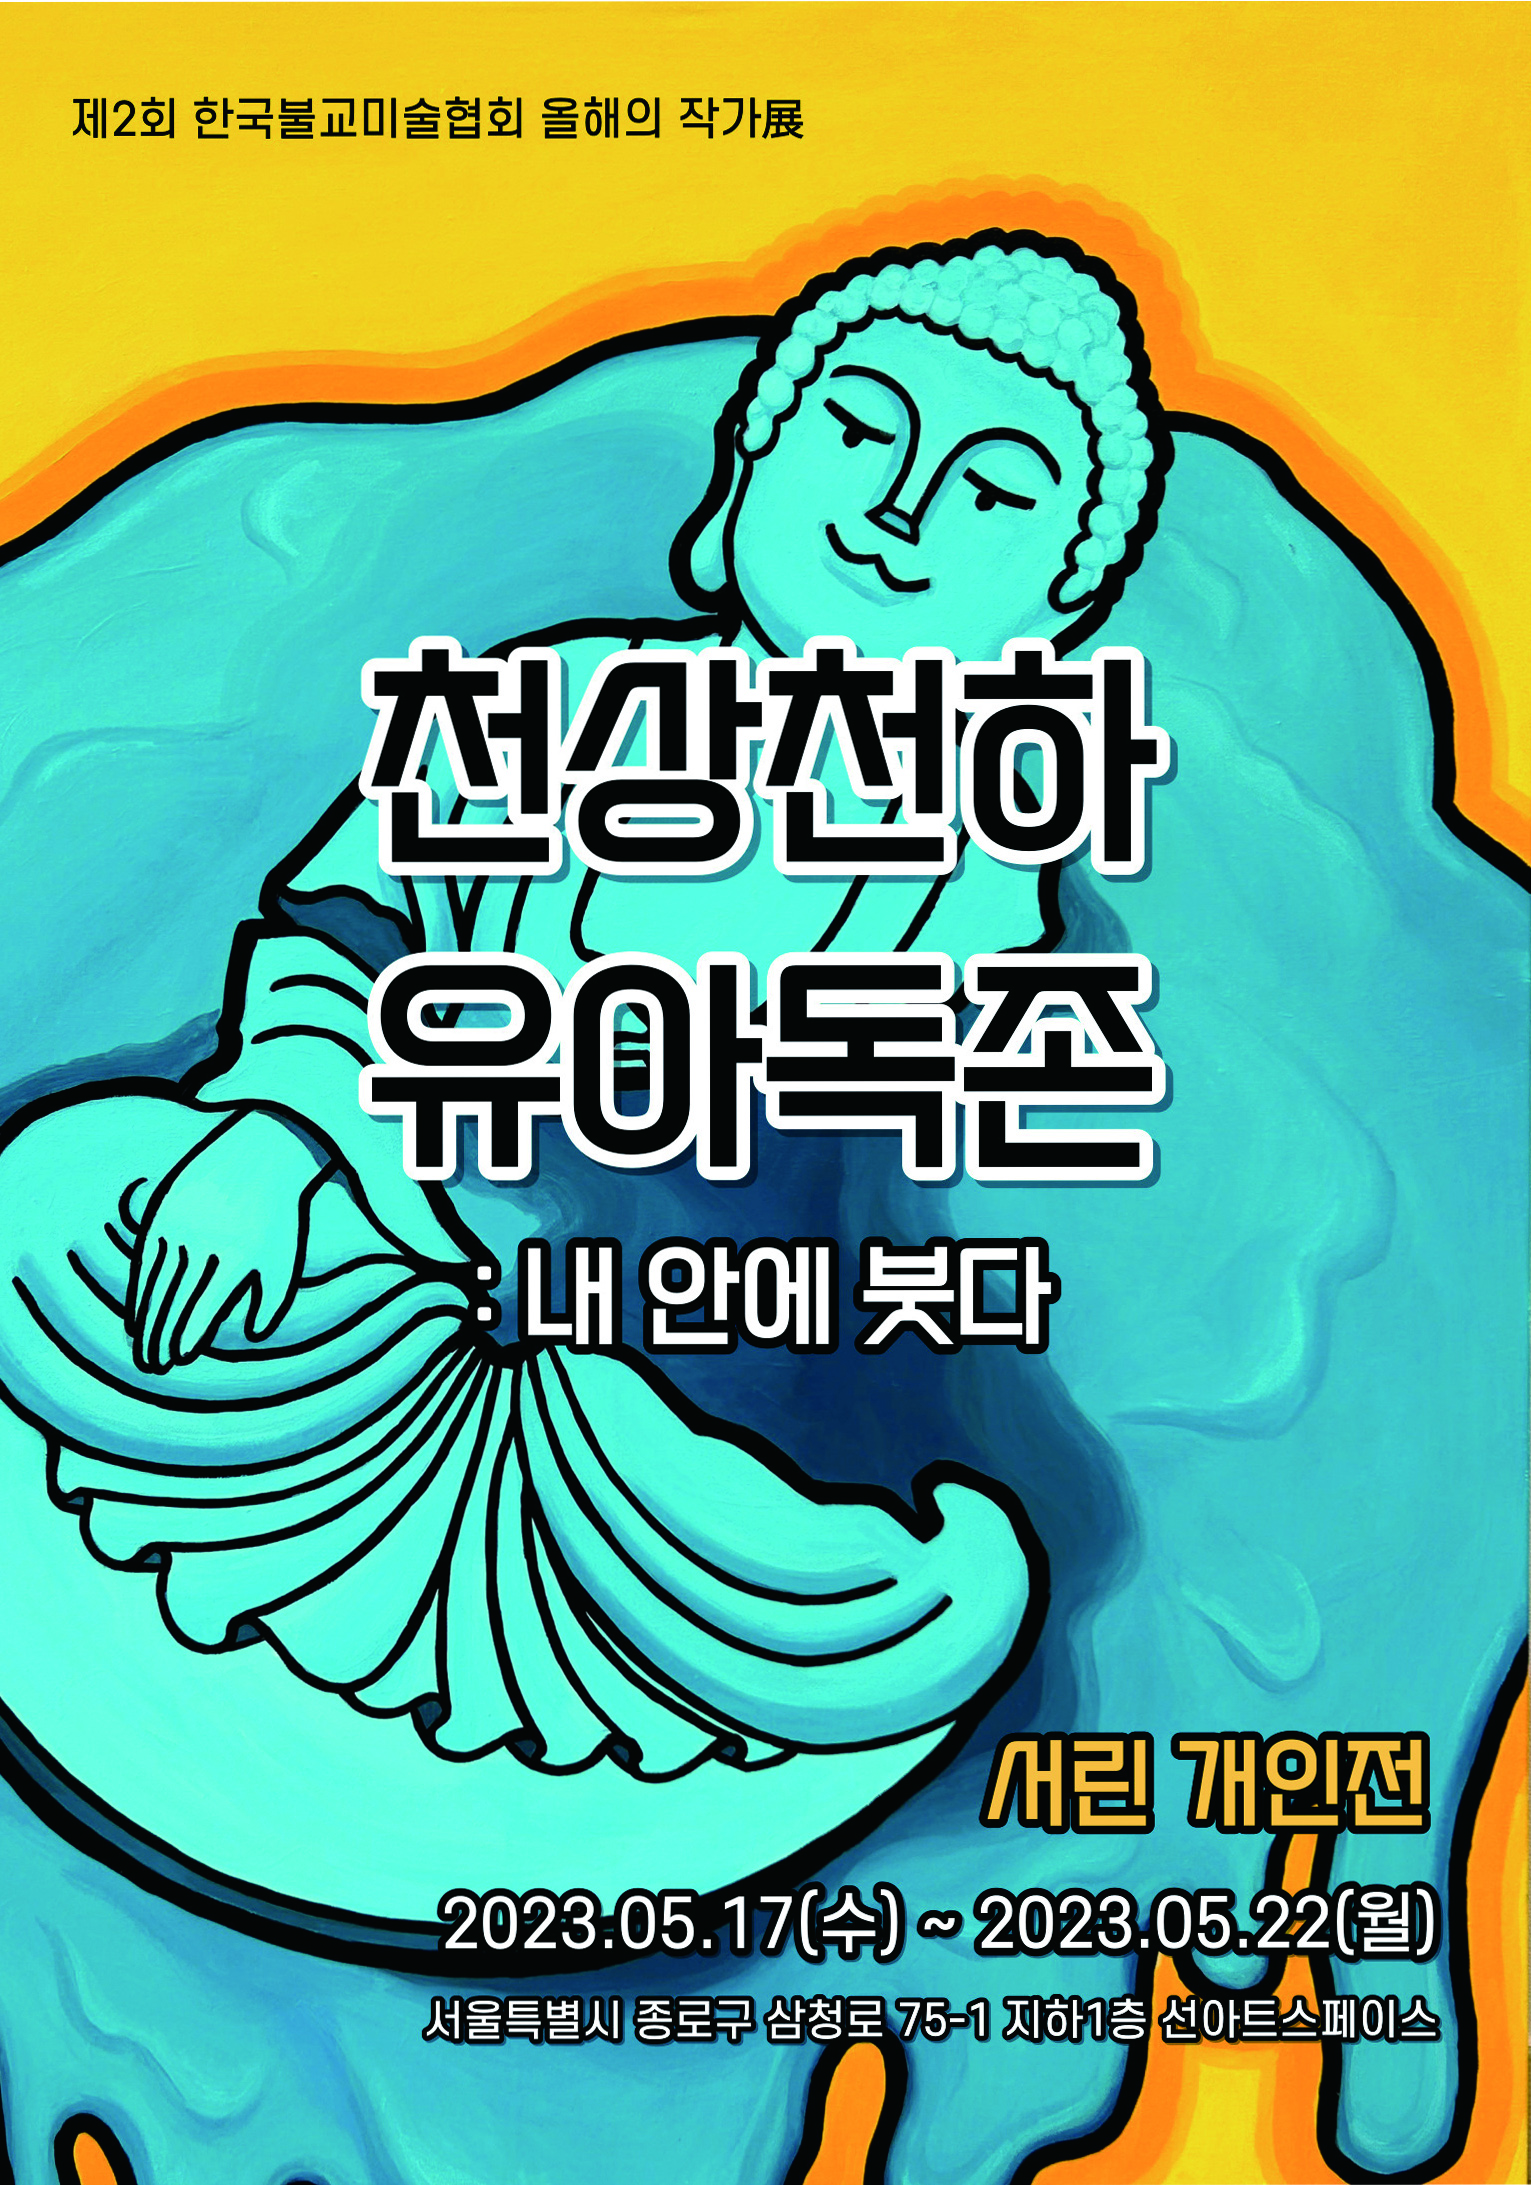 한국불교미술협회 2023 올해의 작가 서린 전시 안내 이미지 사진